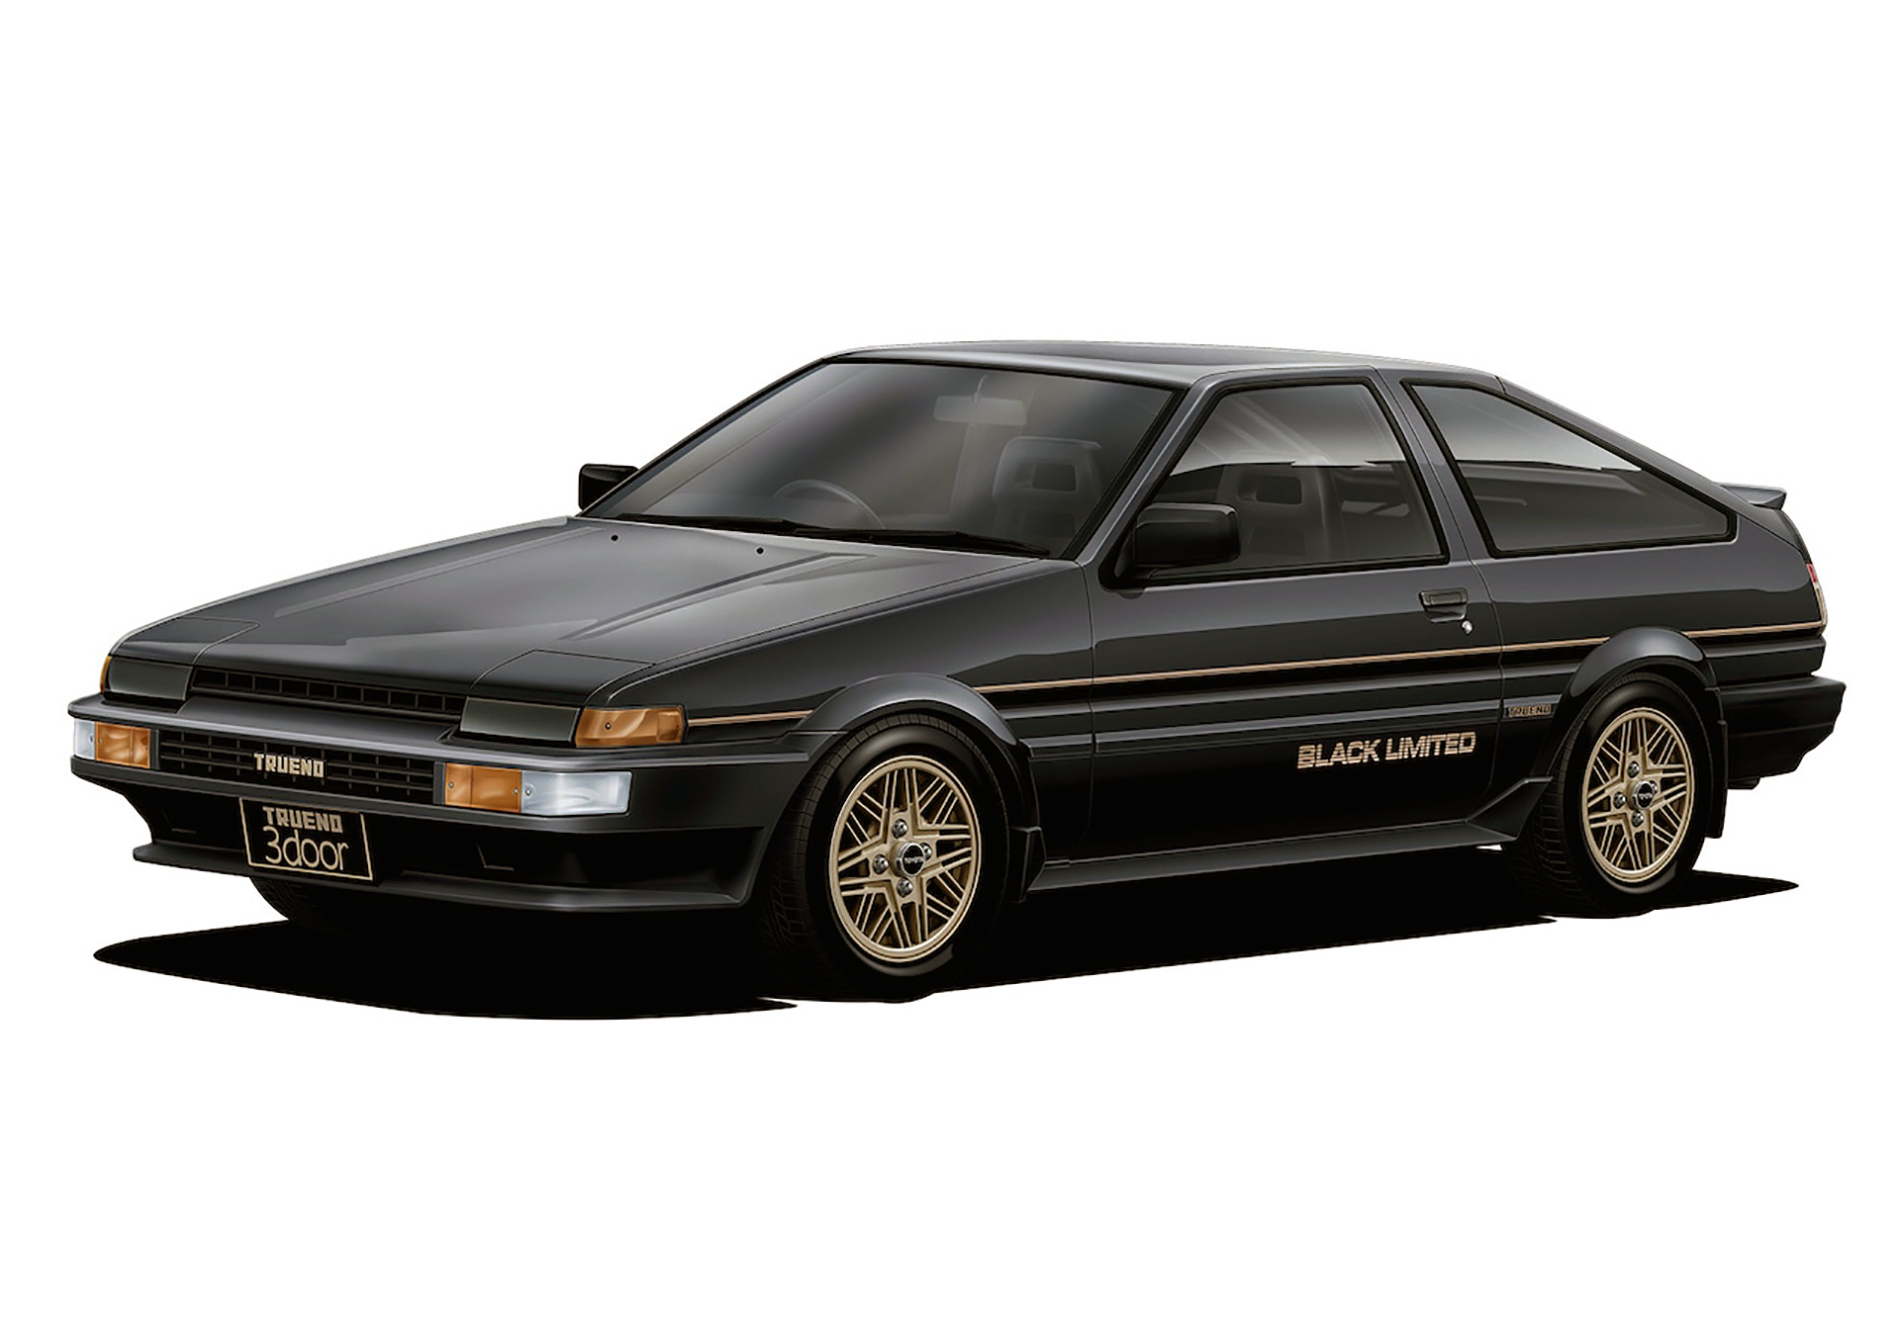 Toyota przywołuje wspomnienia - GT86 w specjalnej wersji Black Limited